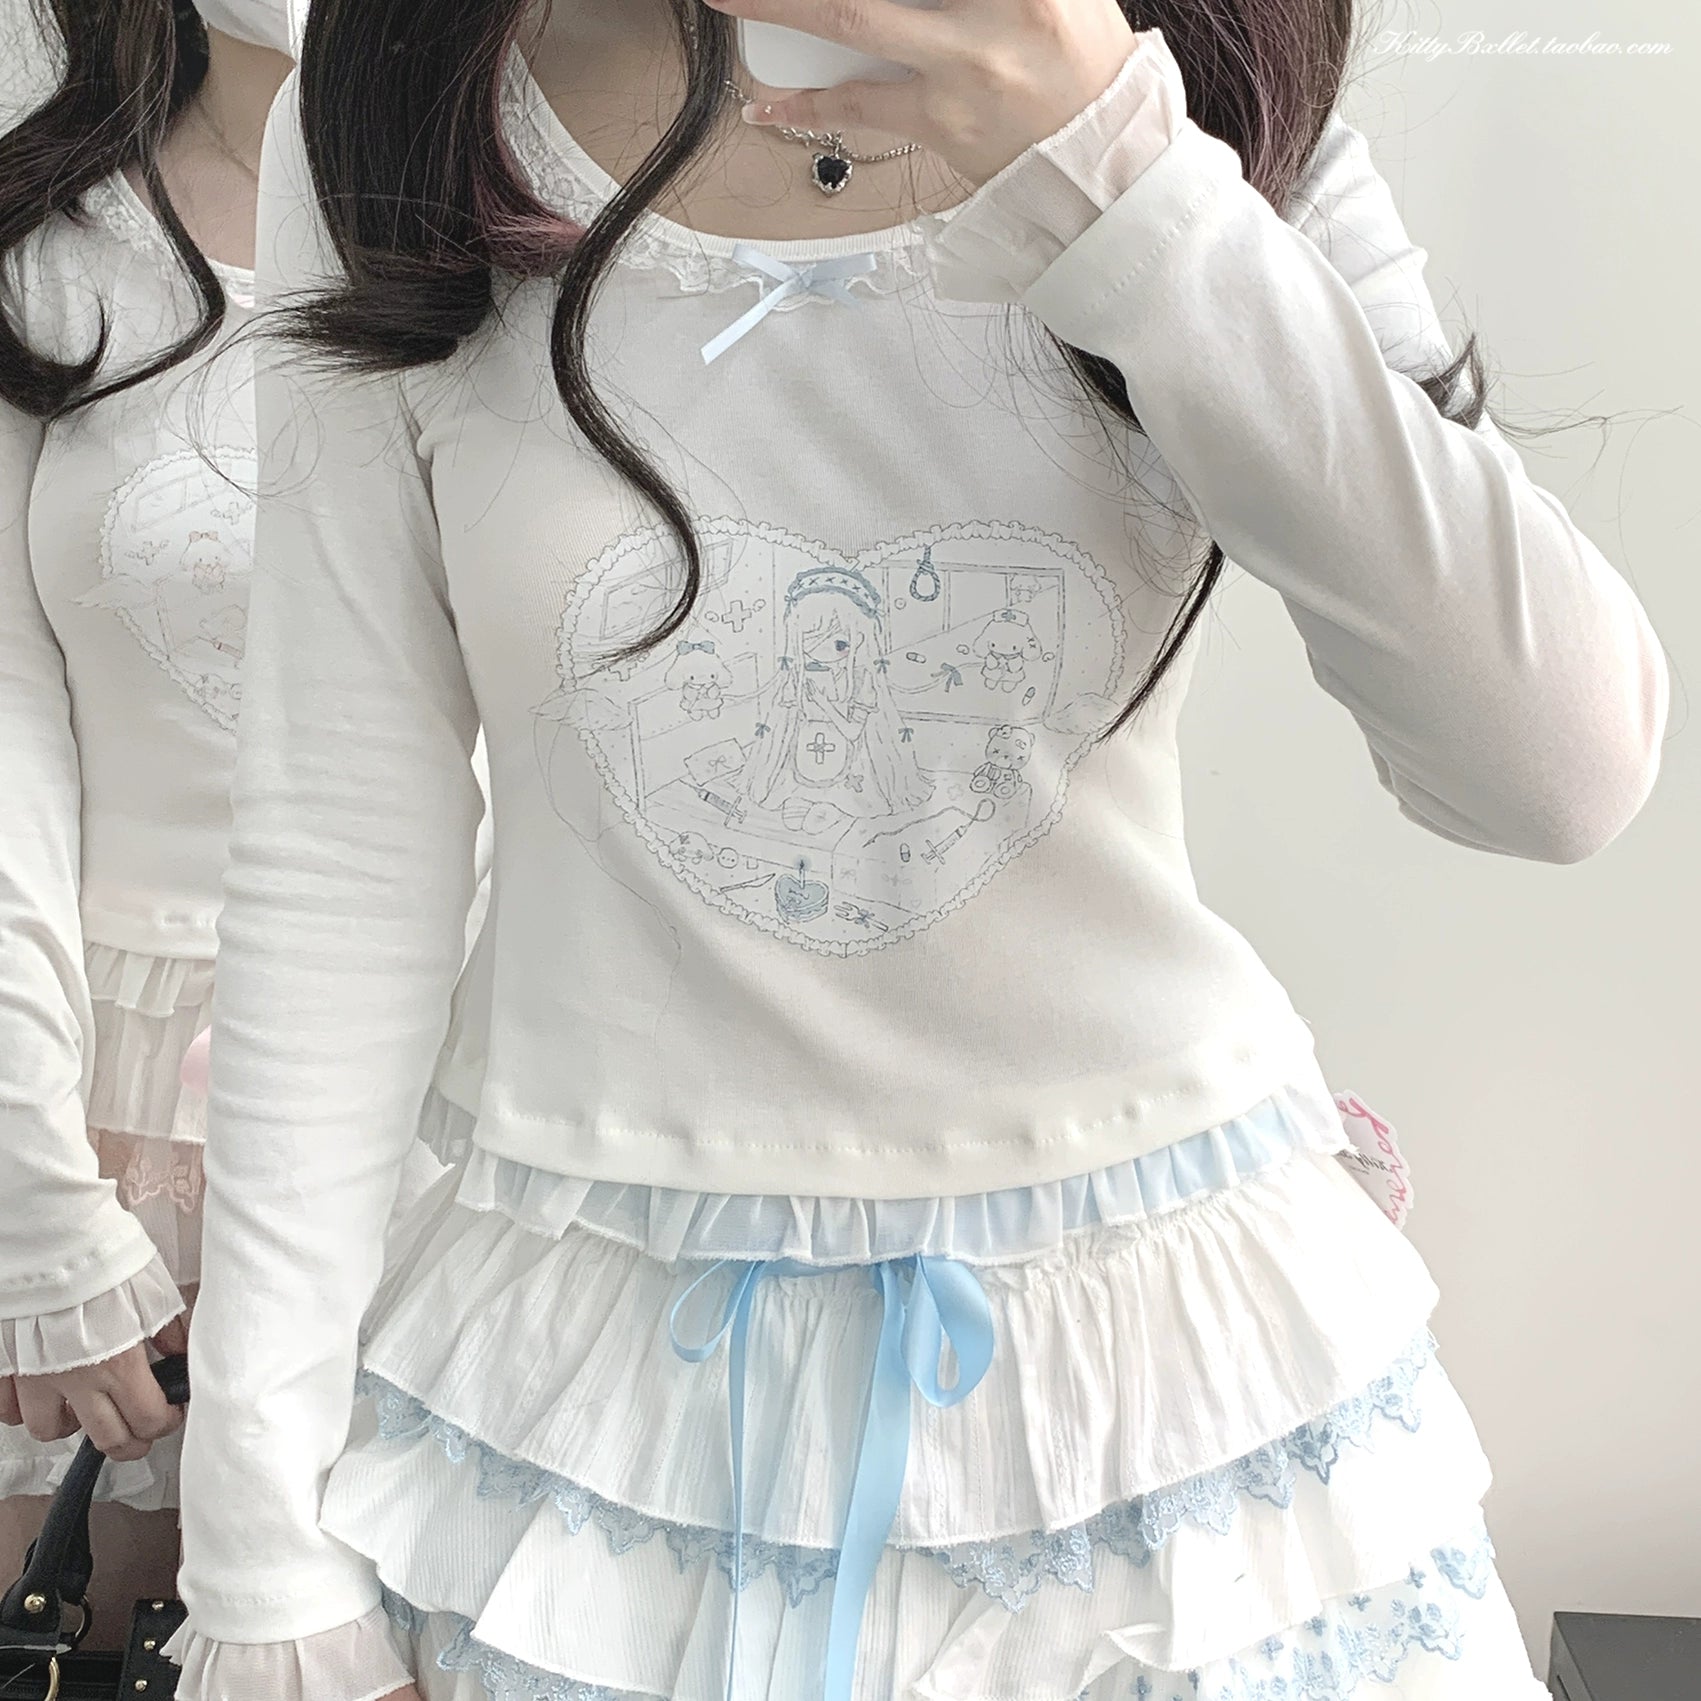 Ryousangata Skirt Lace Cake Skirt And Apron Set 36790:536160